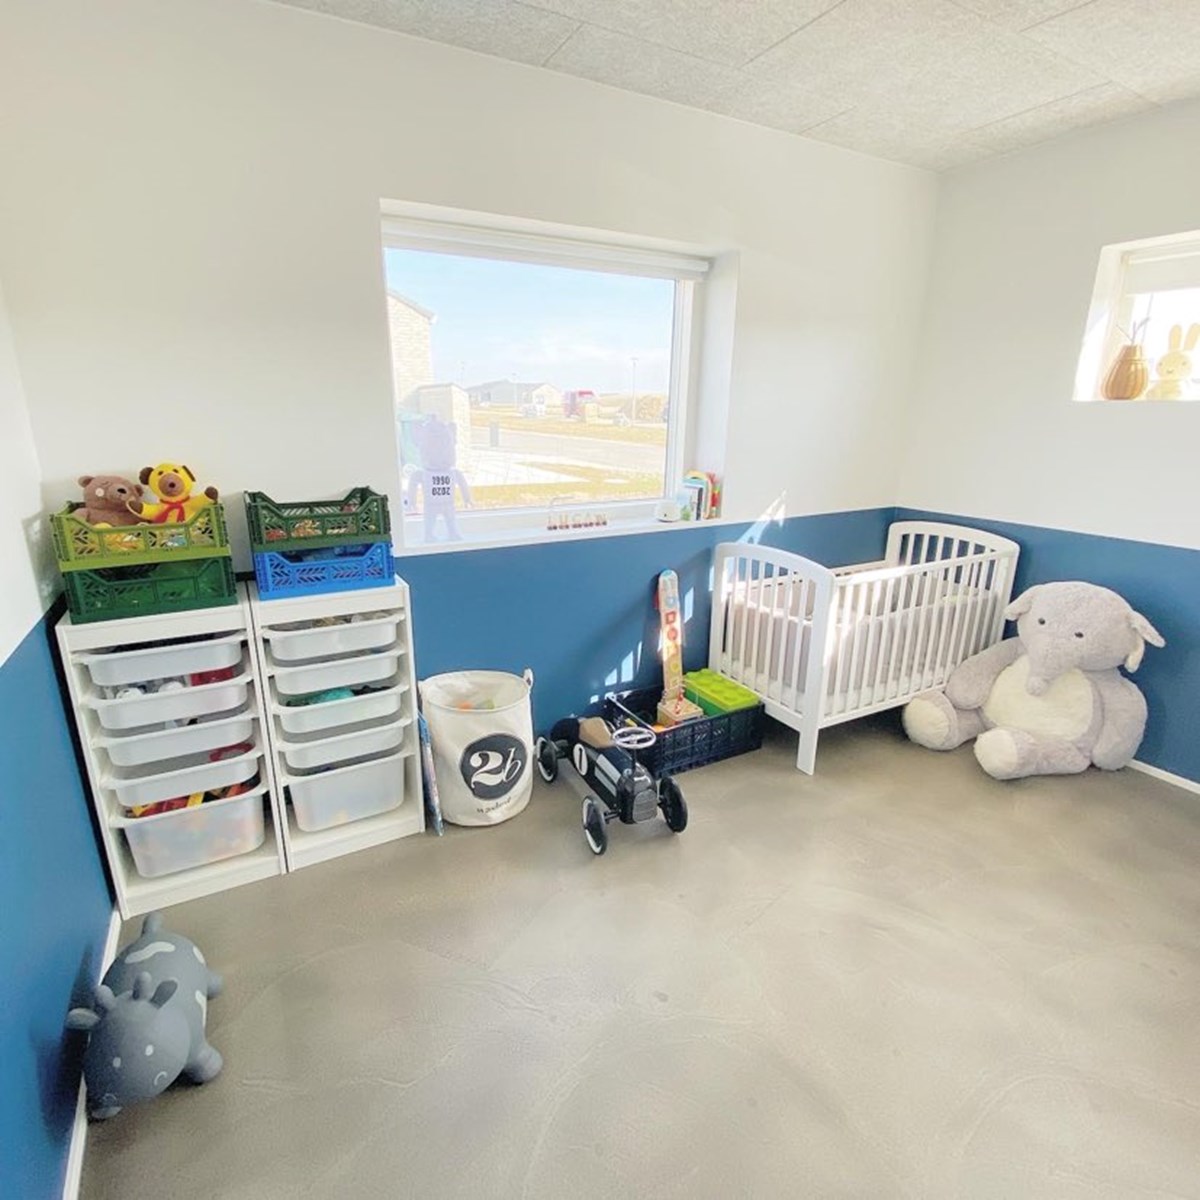 Pernille er ikke så vild med beige-trenden på børneværelset. Derfor har Luca fået et blåt værelse med genbrugsseng og genbrugspuslebord fra Ikea, brugt Dublo og en brugt reol til at opbevare legetøjet i.